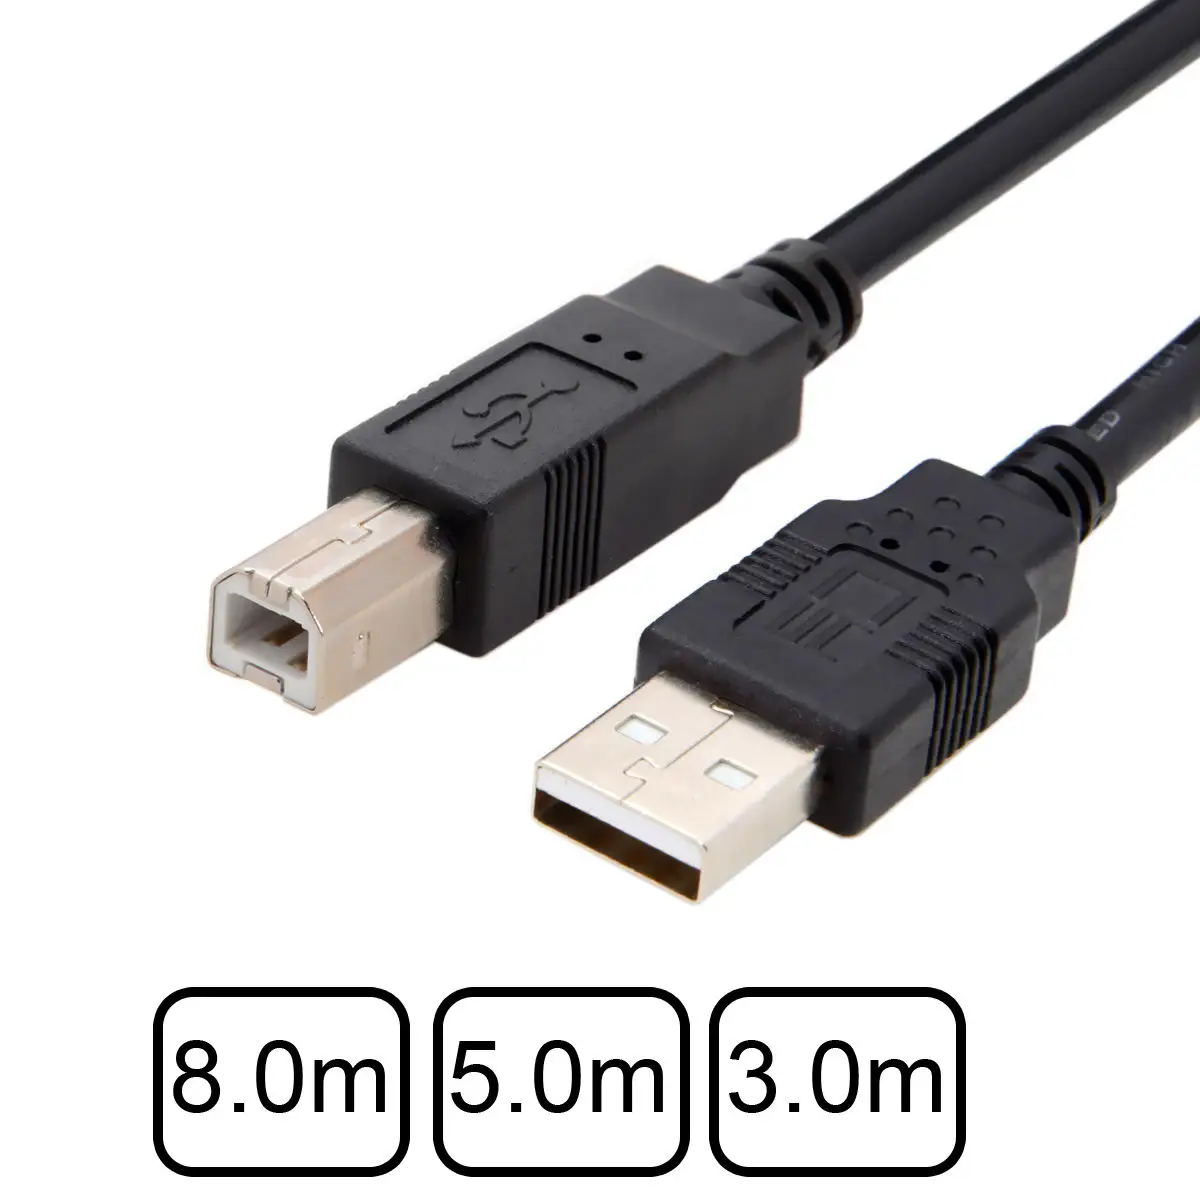 

Jimier 8 м 5 м 3 м USB стандарт-B Тип USB 2,0 кабель передачи данных для жесткого диска, сканера и принтера с двойной оплеткой черный